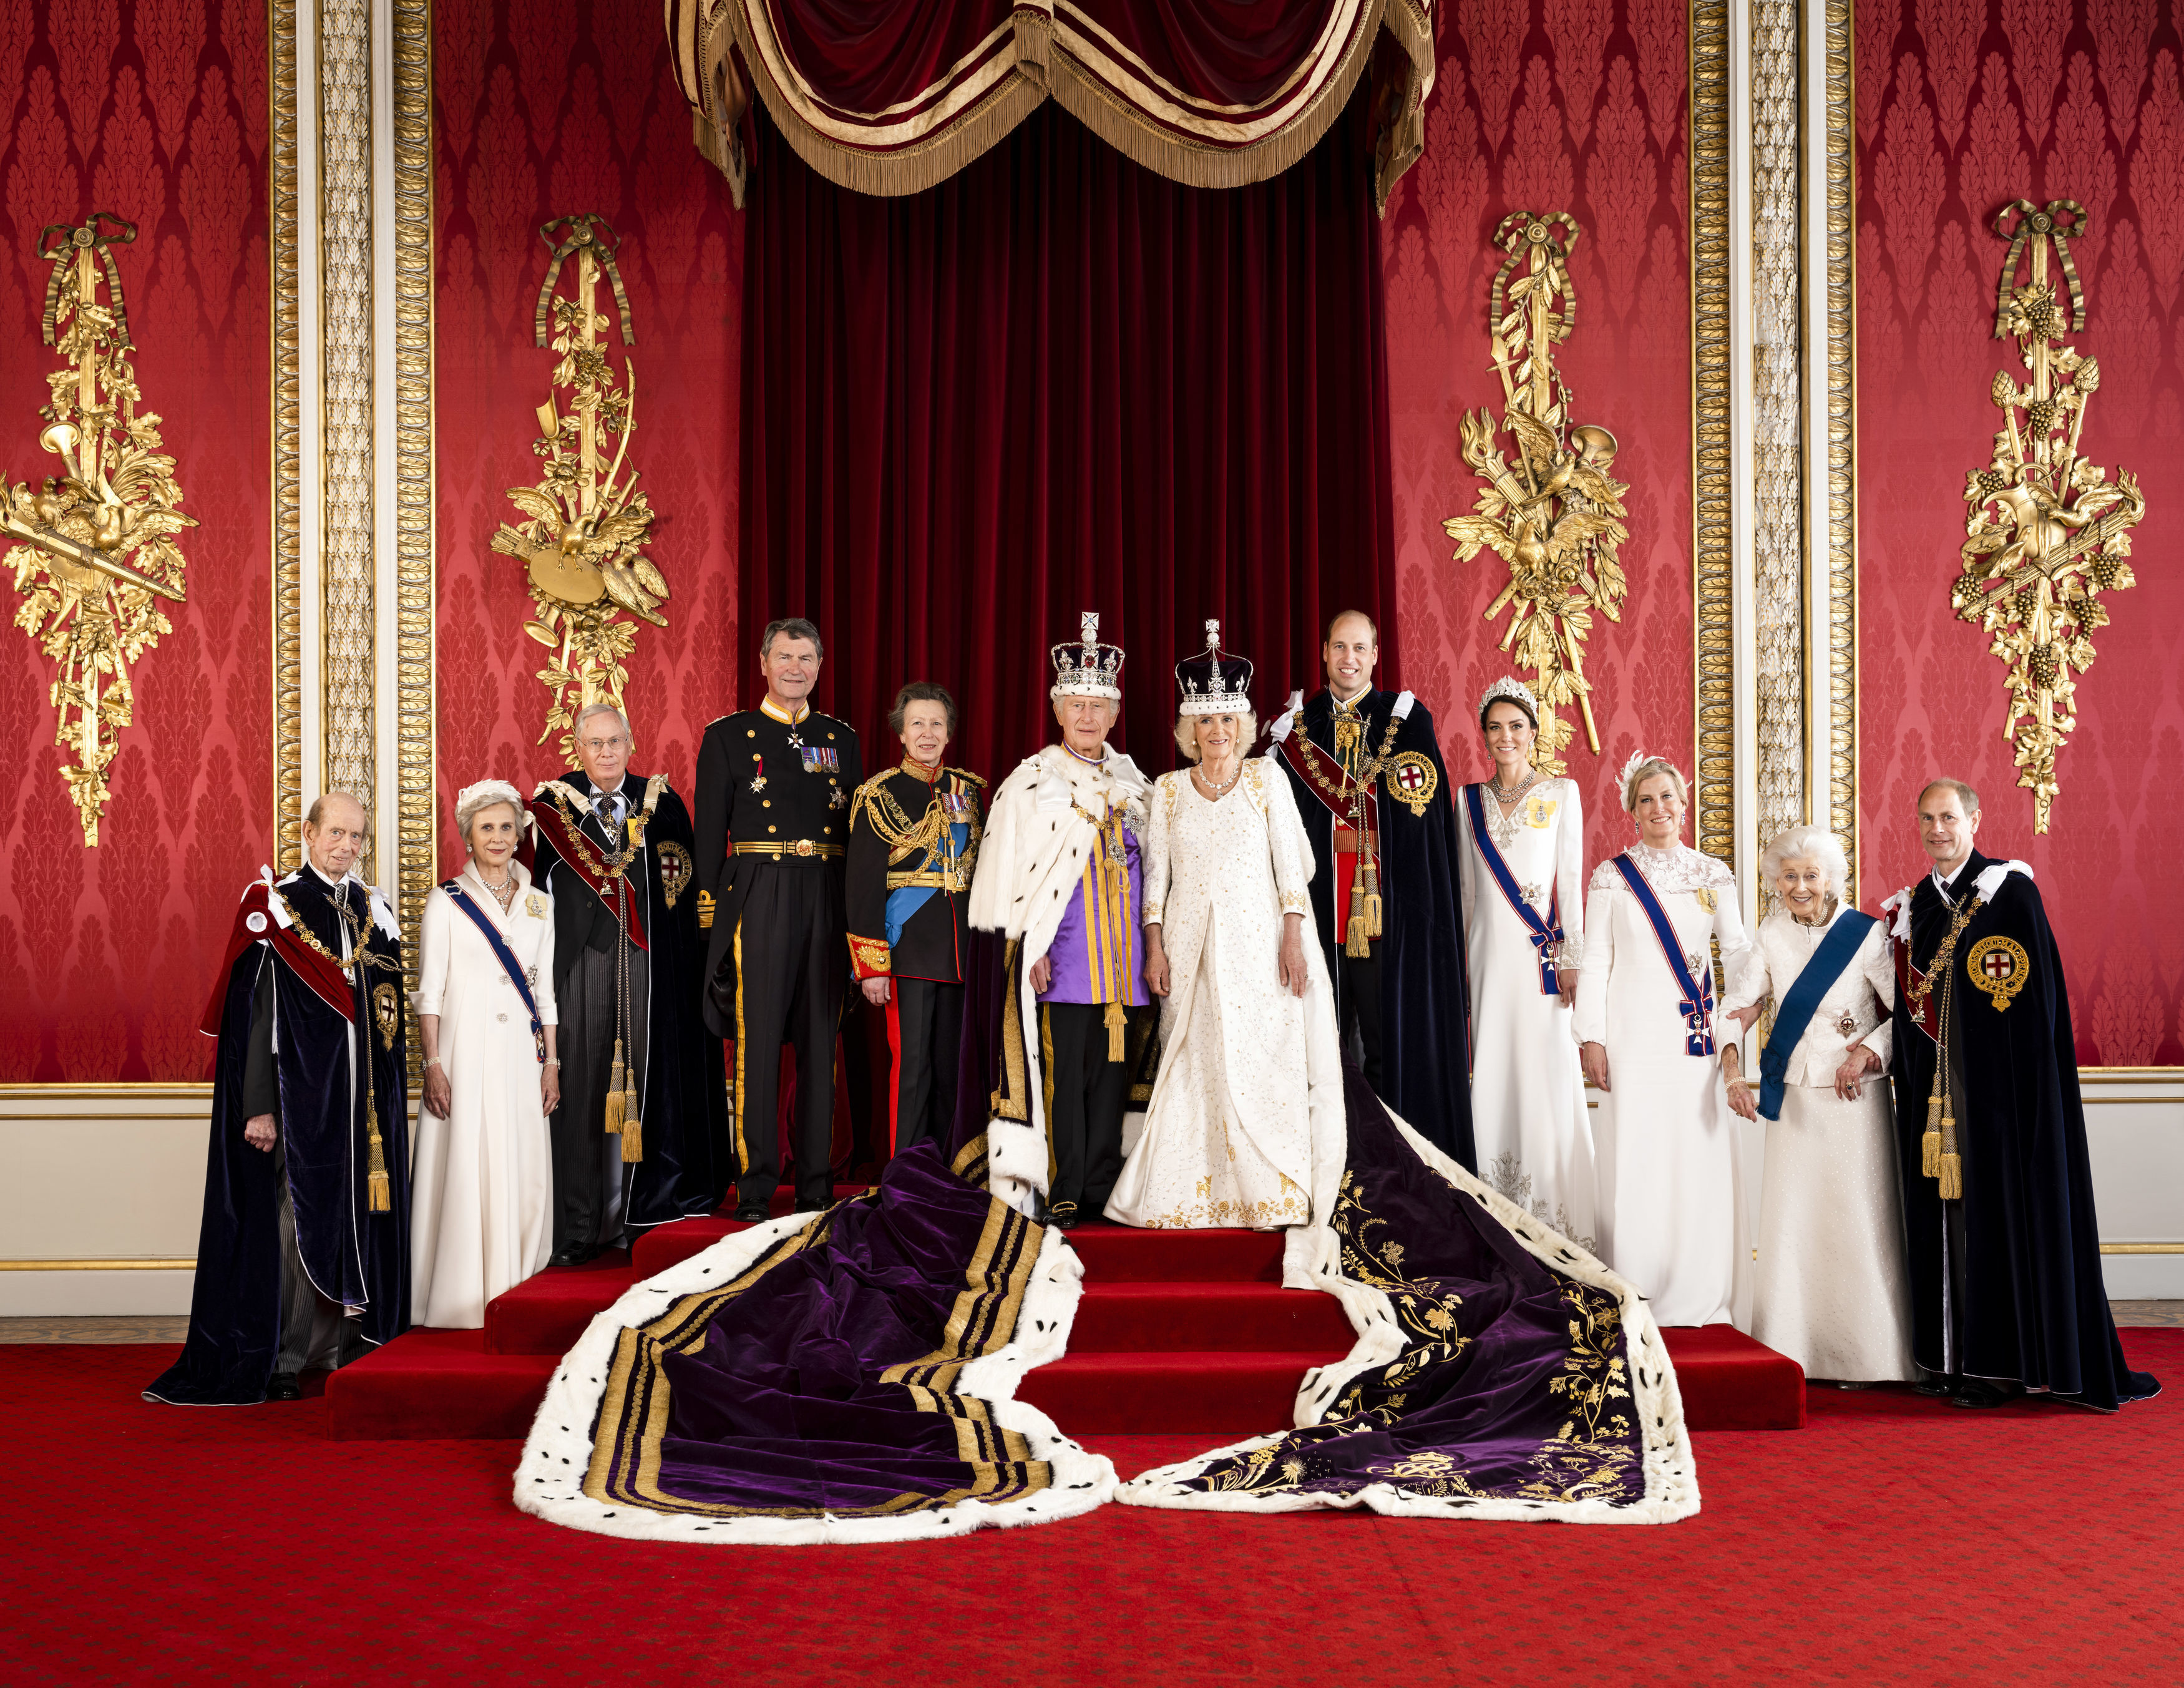 Le prince William est le plus grand royal avec 6 pieds 3 pouces